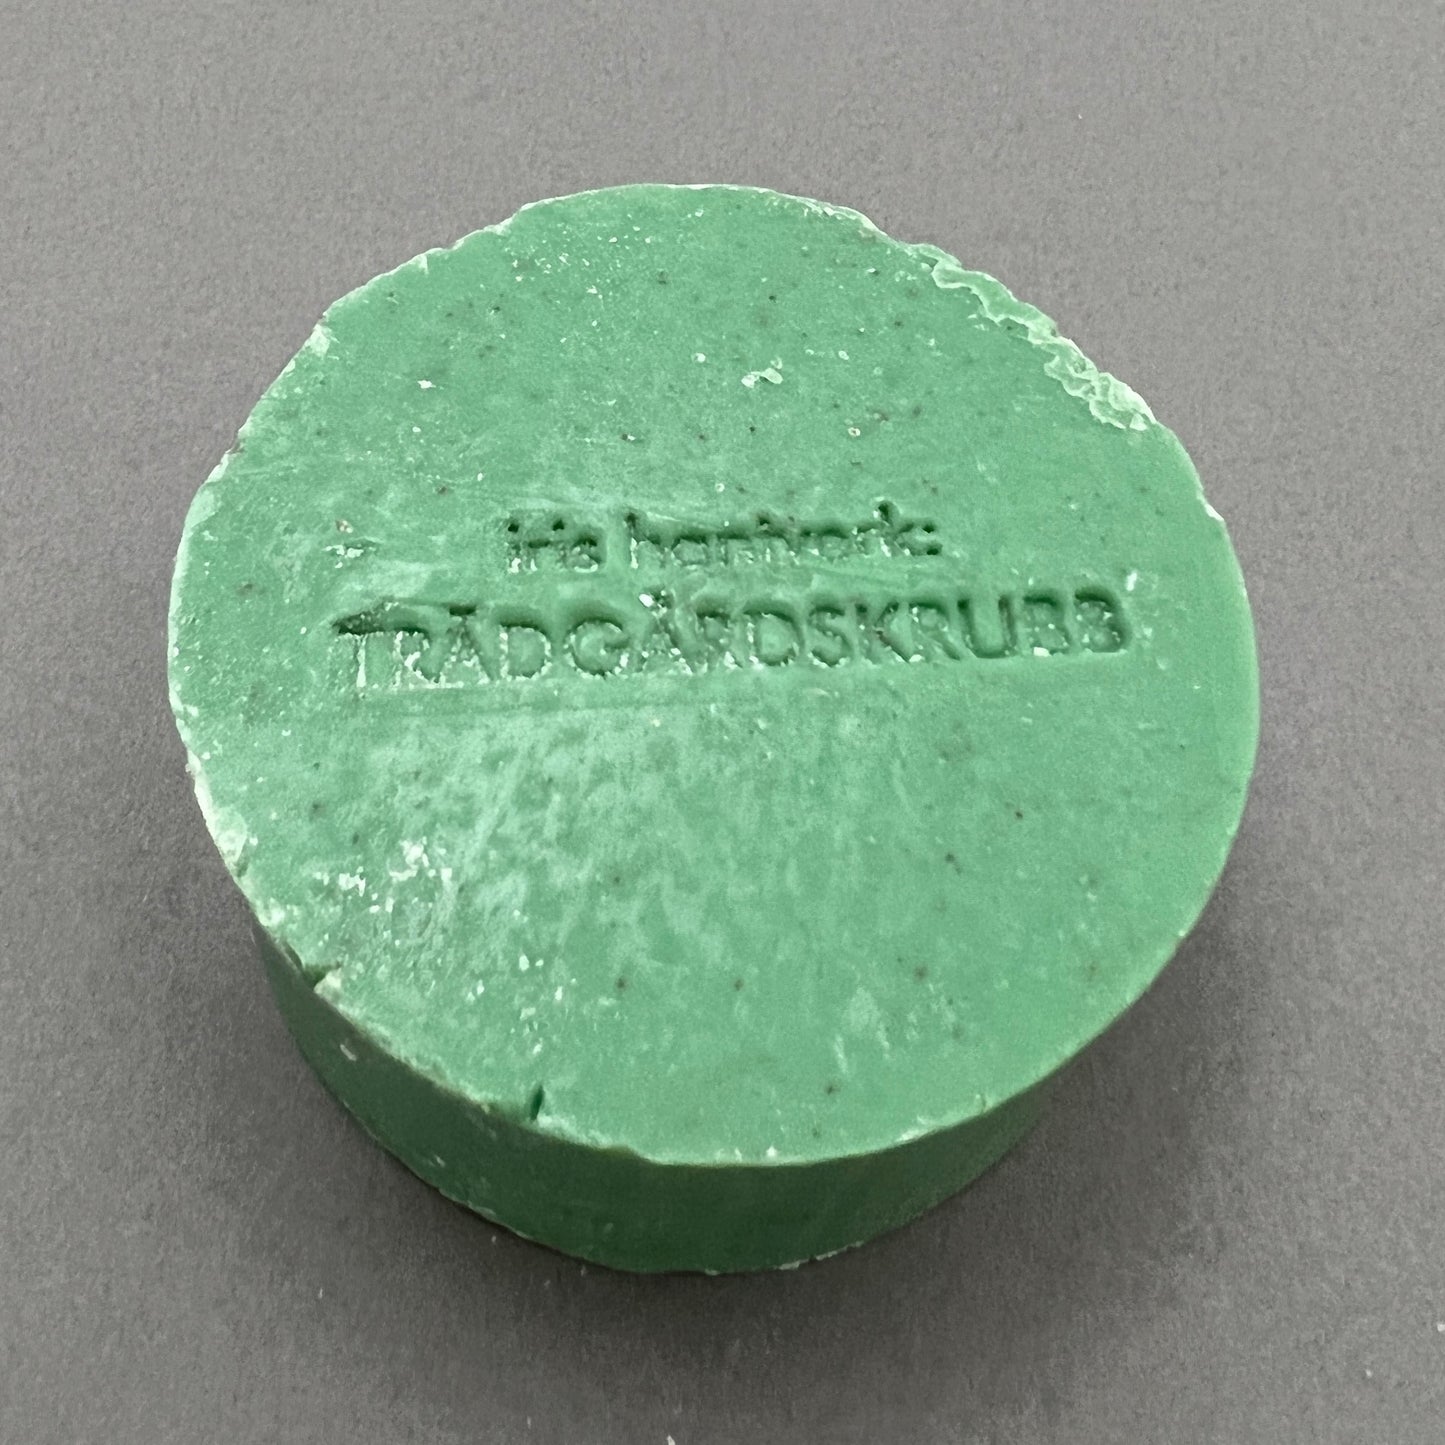 A round green handmade garden soap from iris hanteverk laying on a gray background